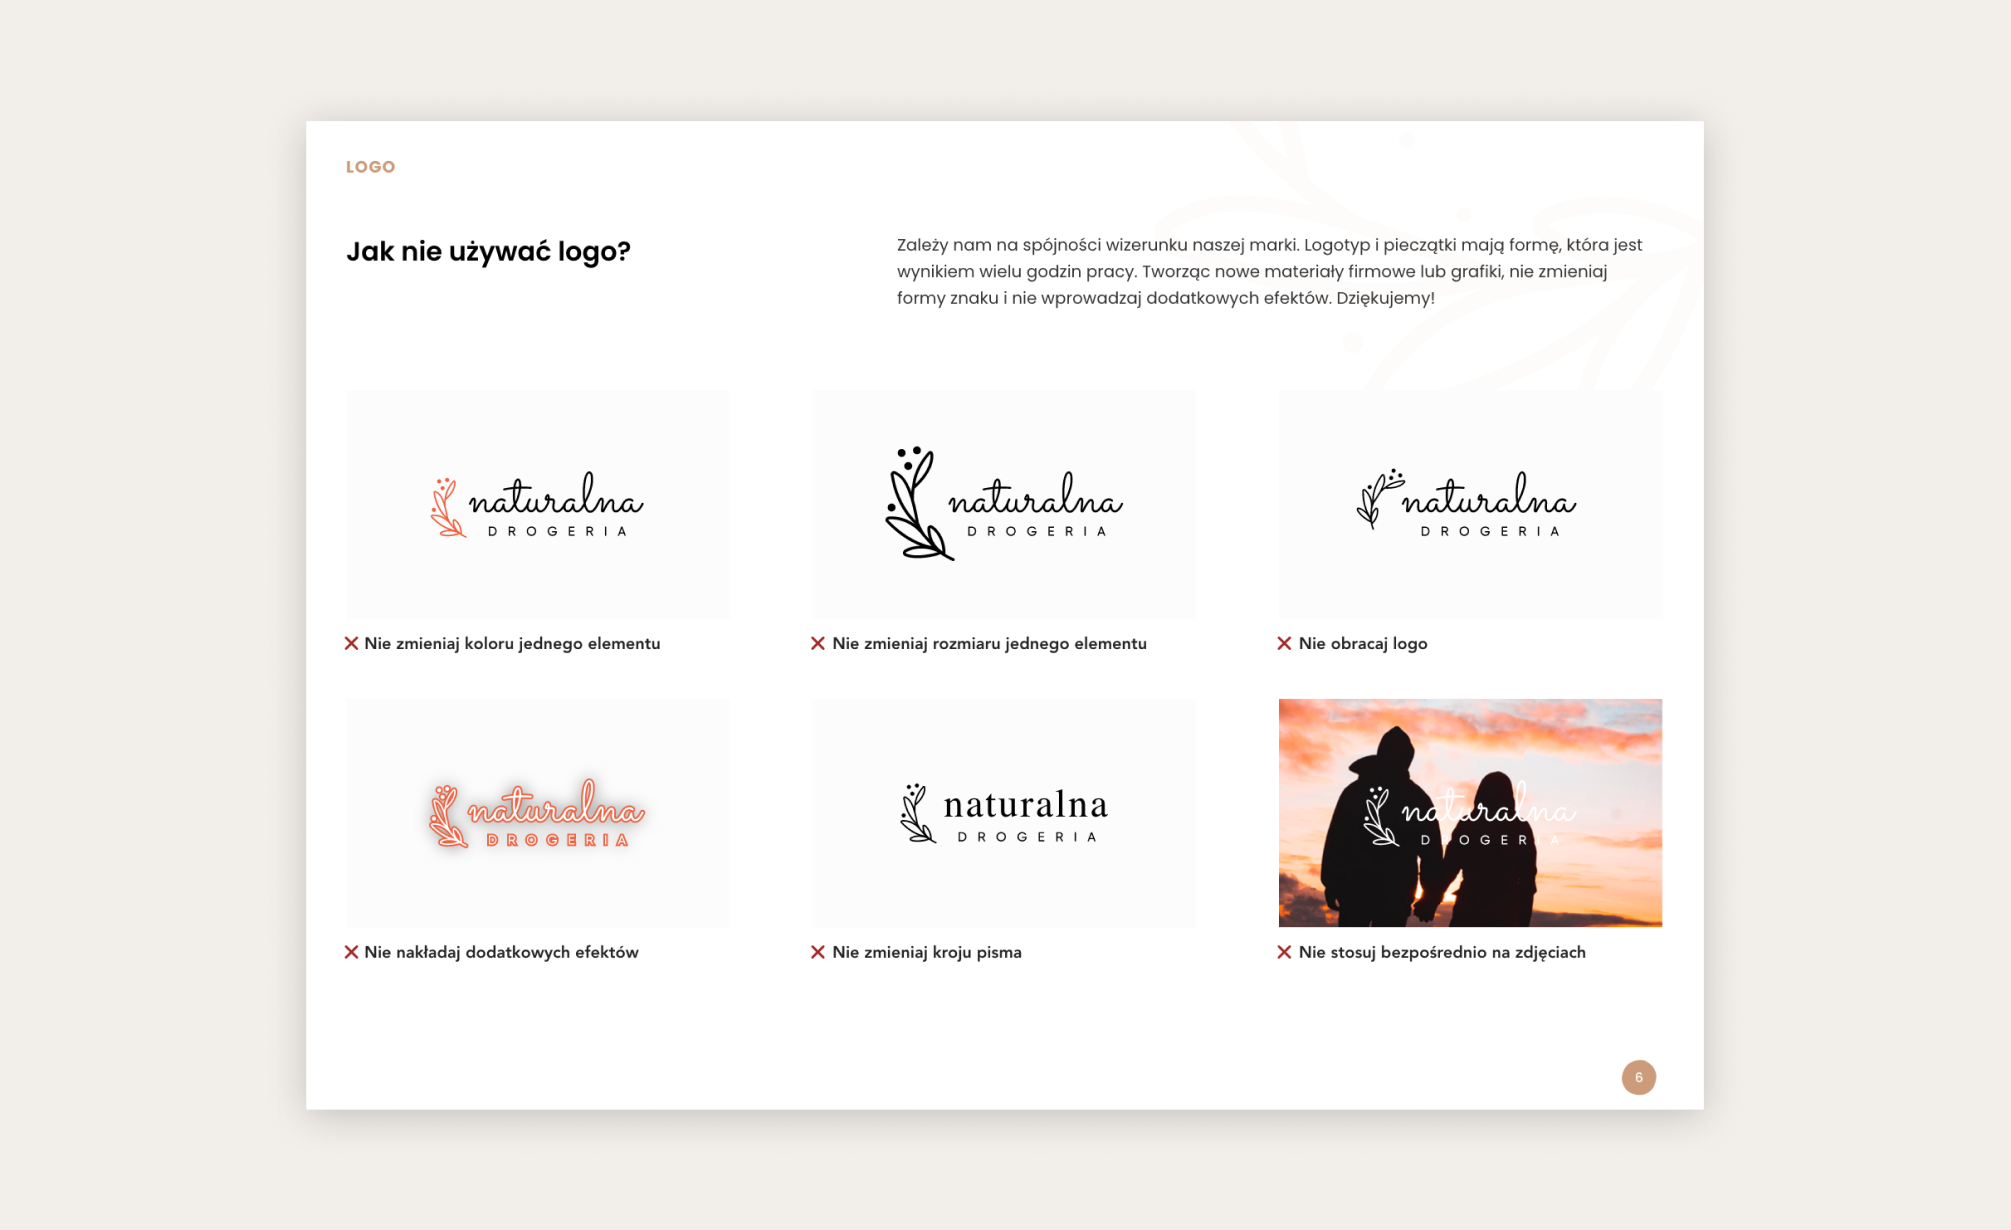 Strona z brandbooka Naturalnej Drogerii. Na sześciu grafikach są pokazane niewłaściwe użycia znaku jako przykład, czego nie należy robić z logo.